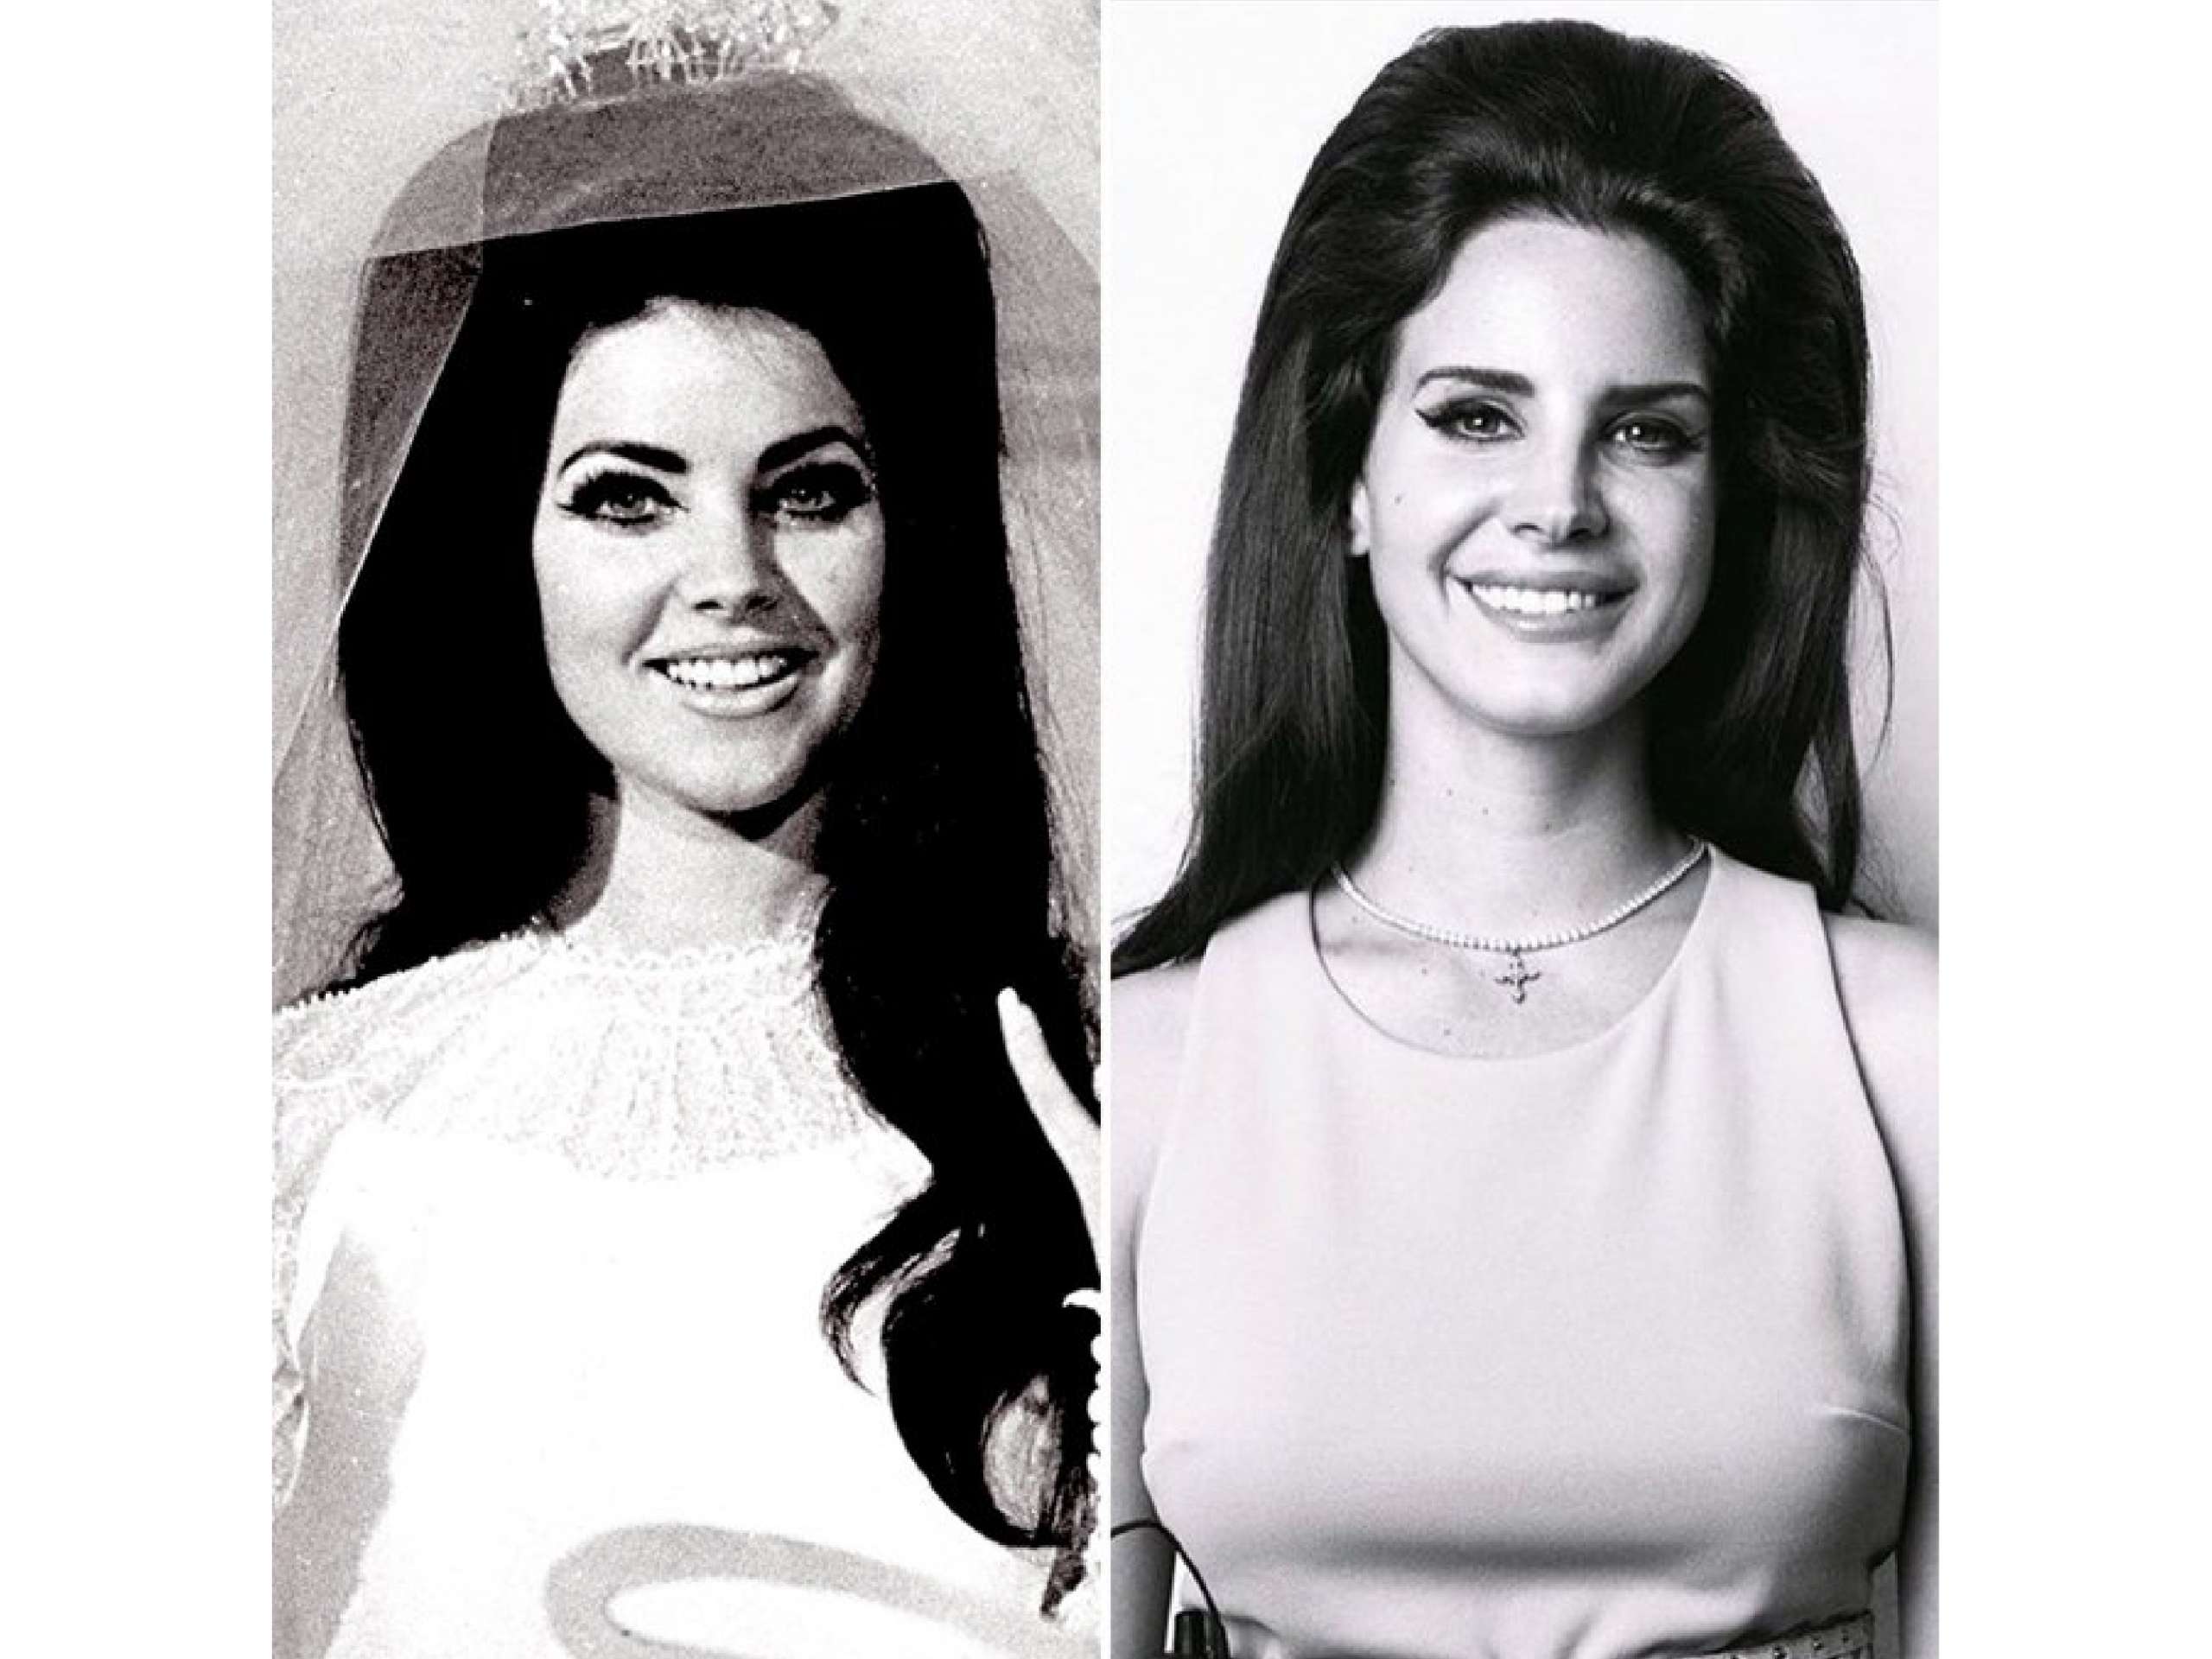 左圖為 Priscilla Presley，右圖為 Lana Del Rey 。